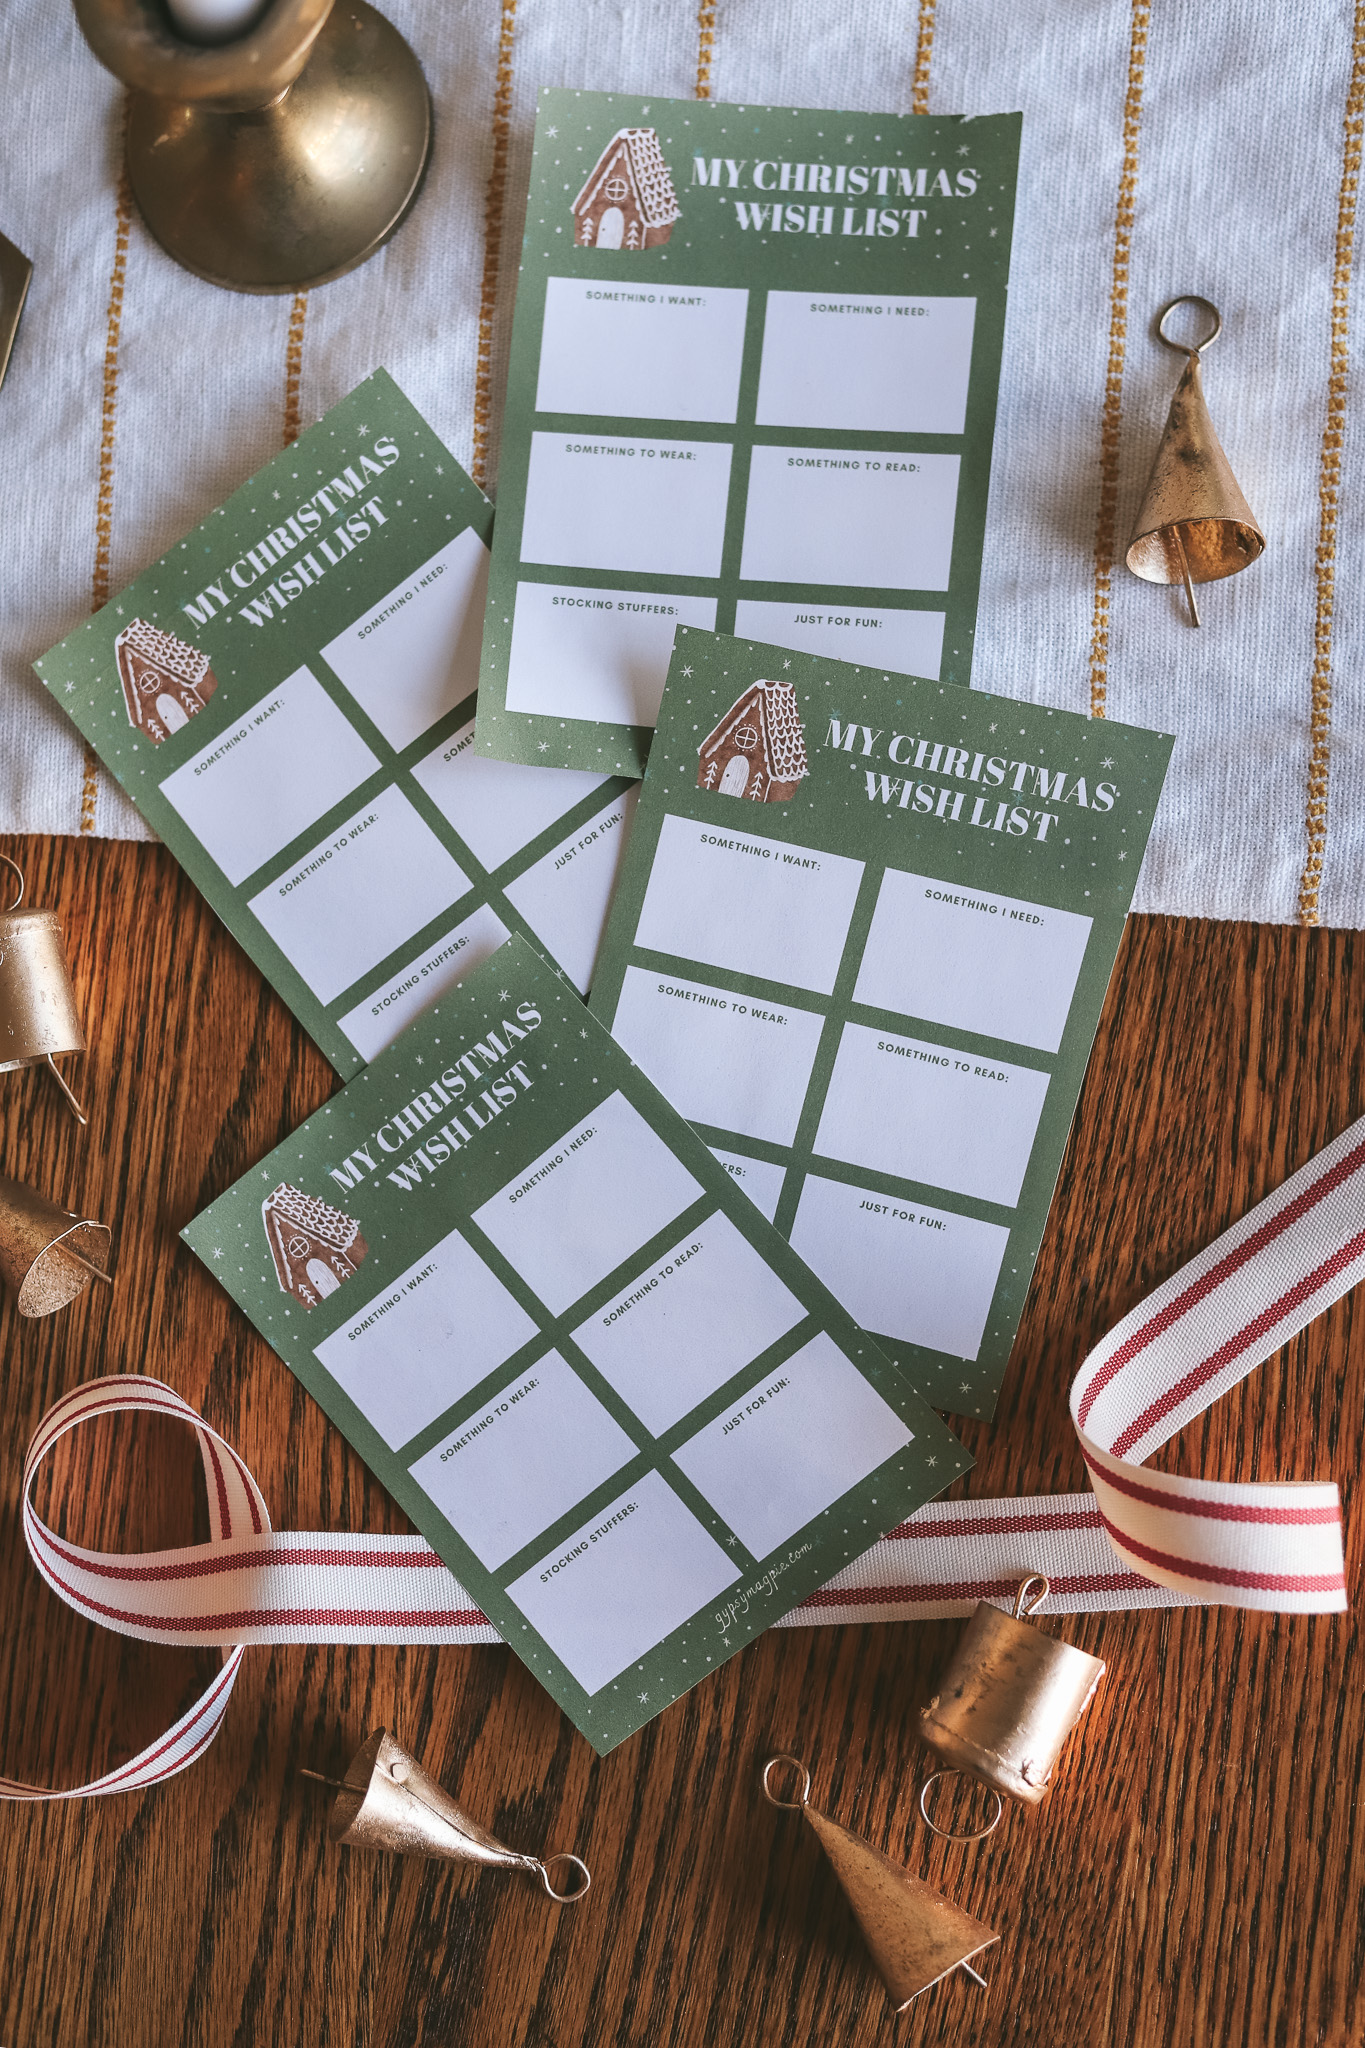 Free printable Christmas lists for the holiday season!